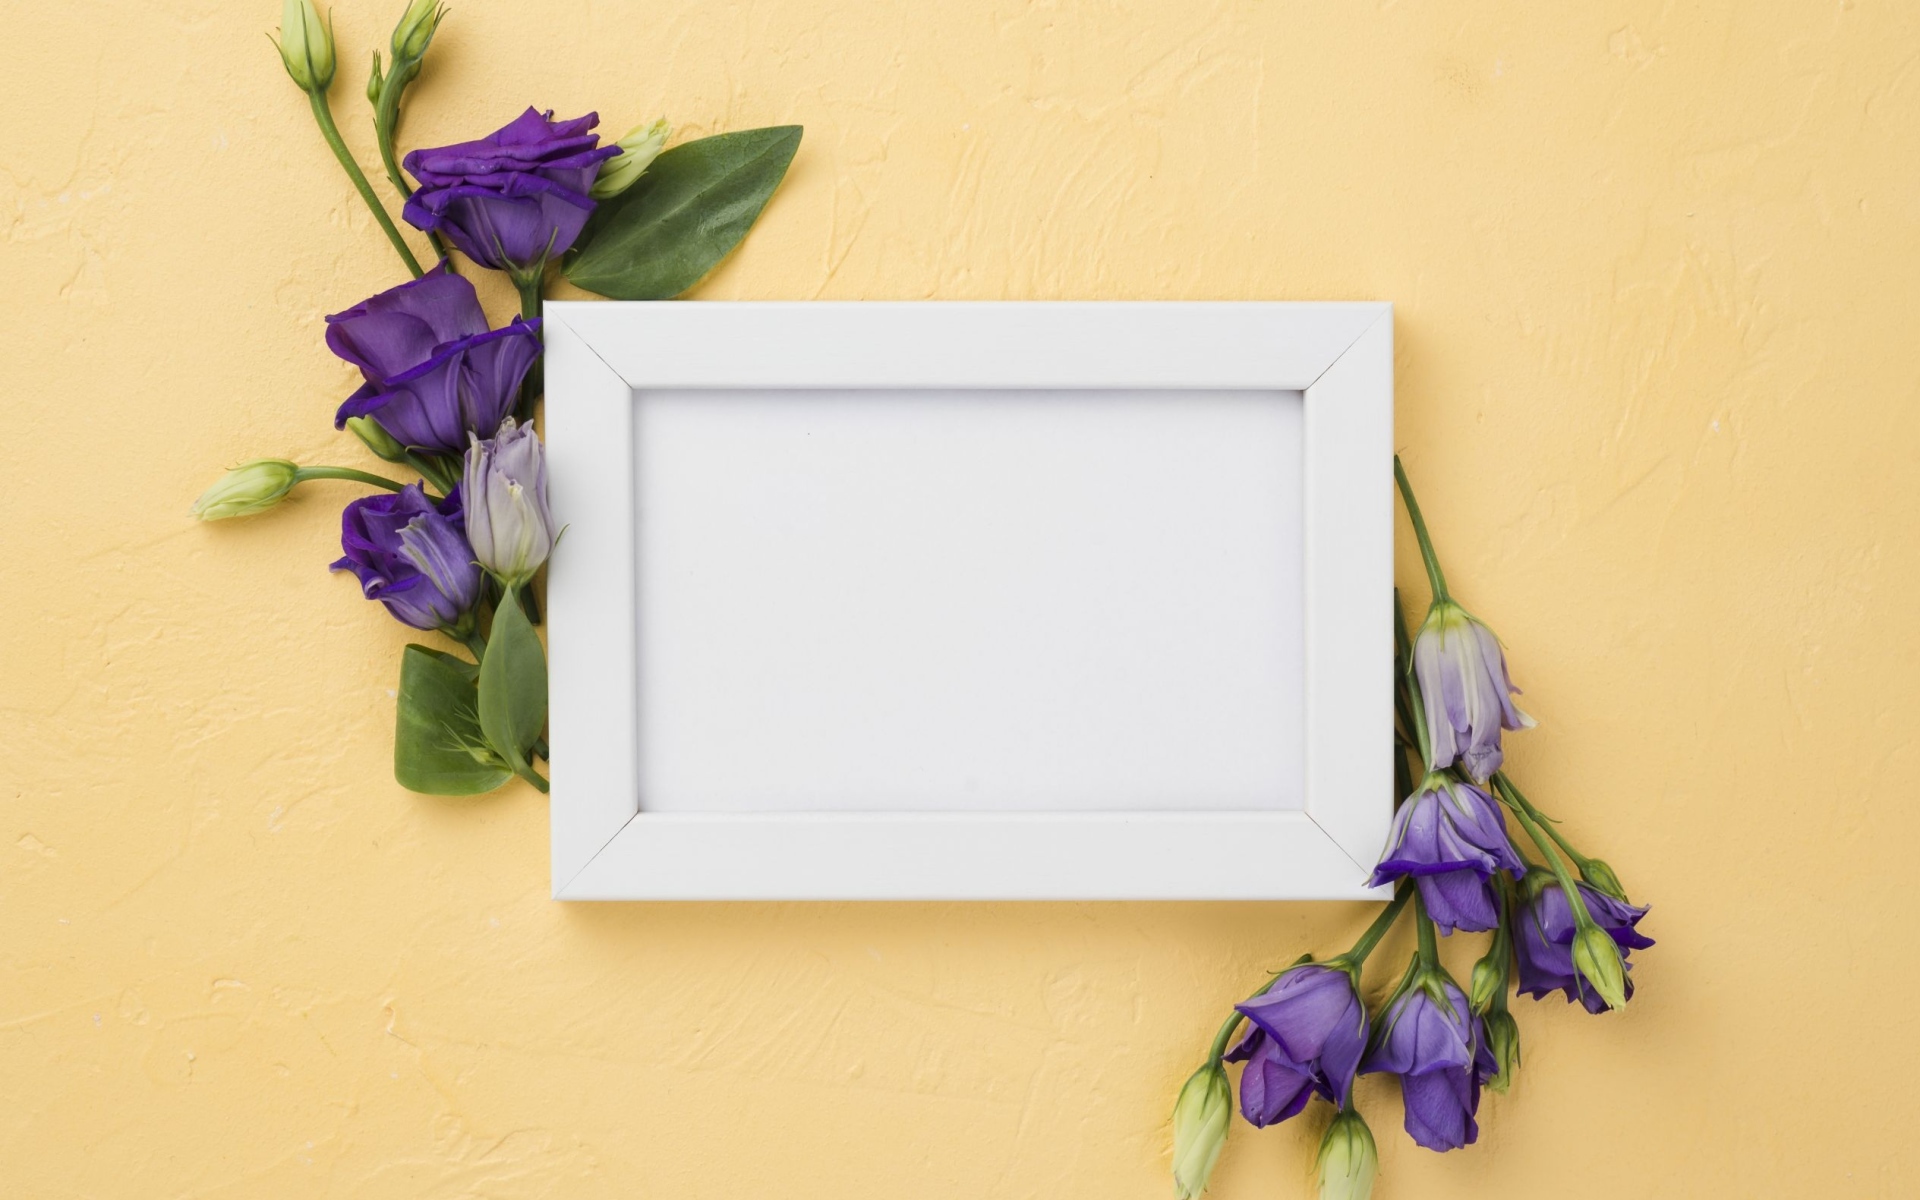 Белая рамка с фиолетовыми цветами эустома